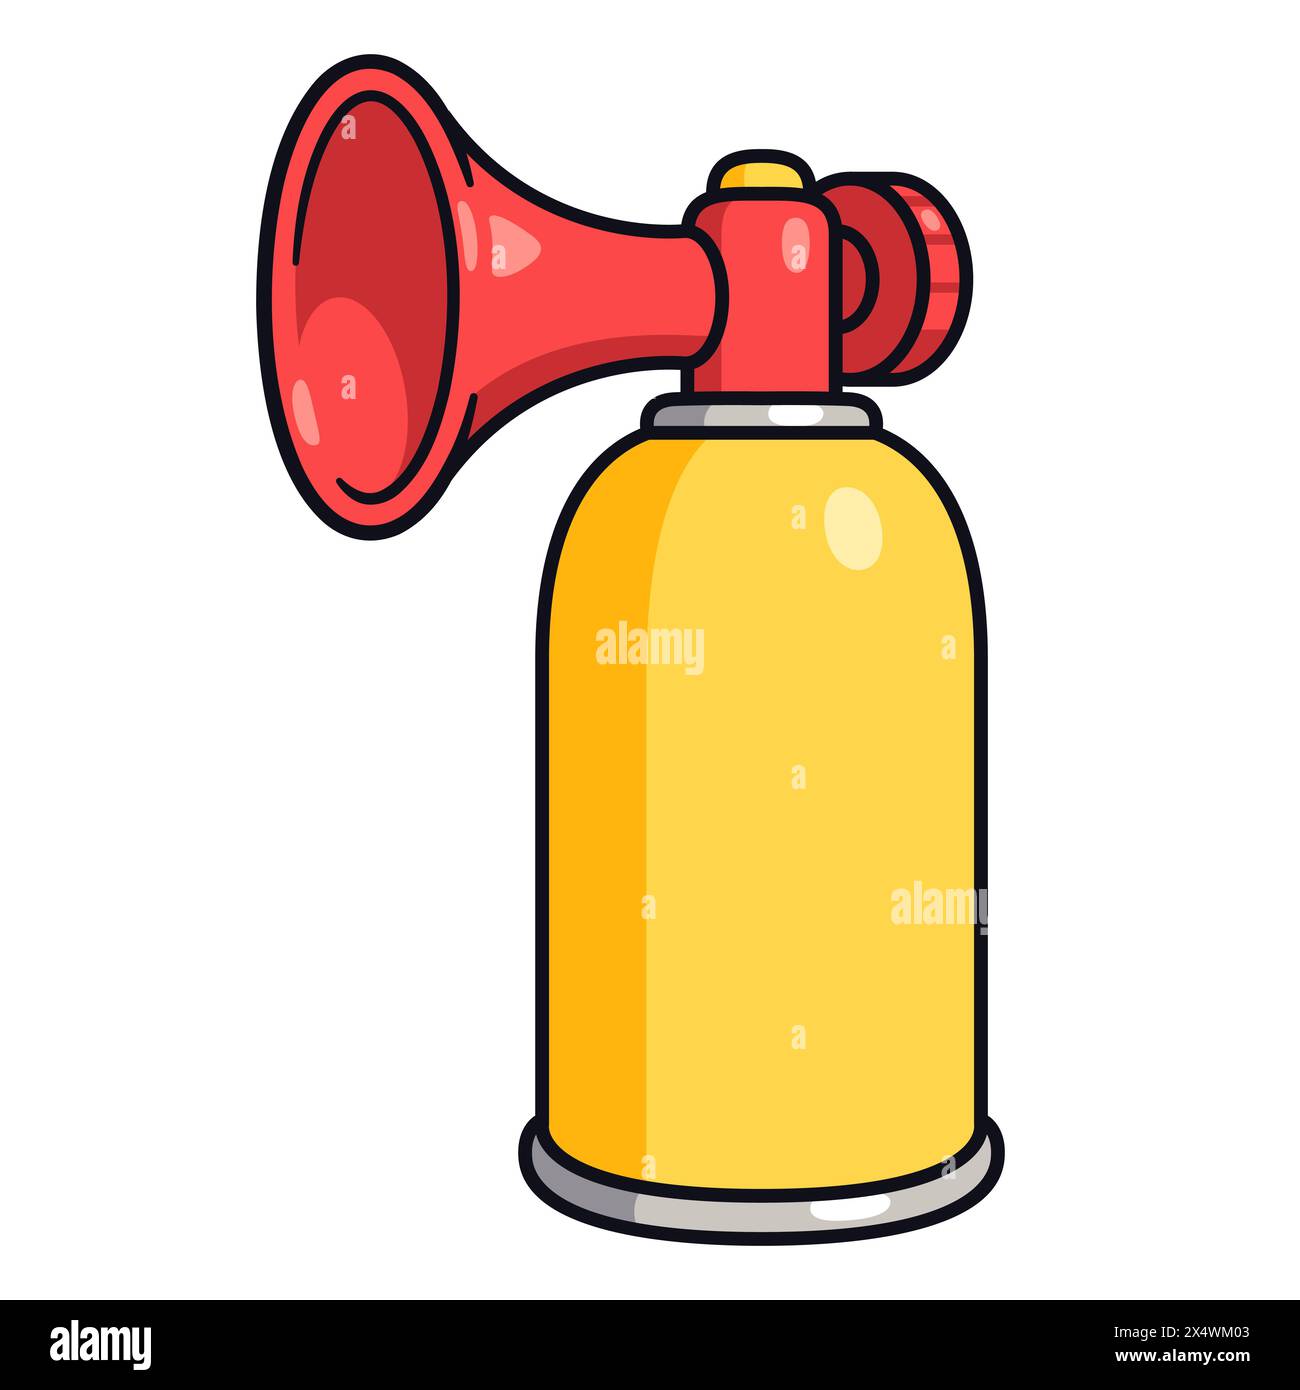 Zeichentrickzeichnung des Lufthorns. Druckluftkanne mit Geräuscherzeuger. Illustration von Vektorclips. Stock Vektor